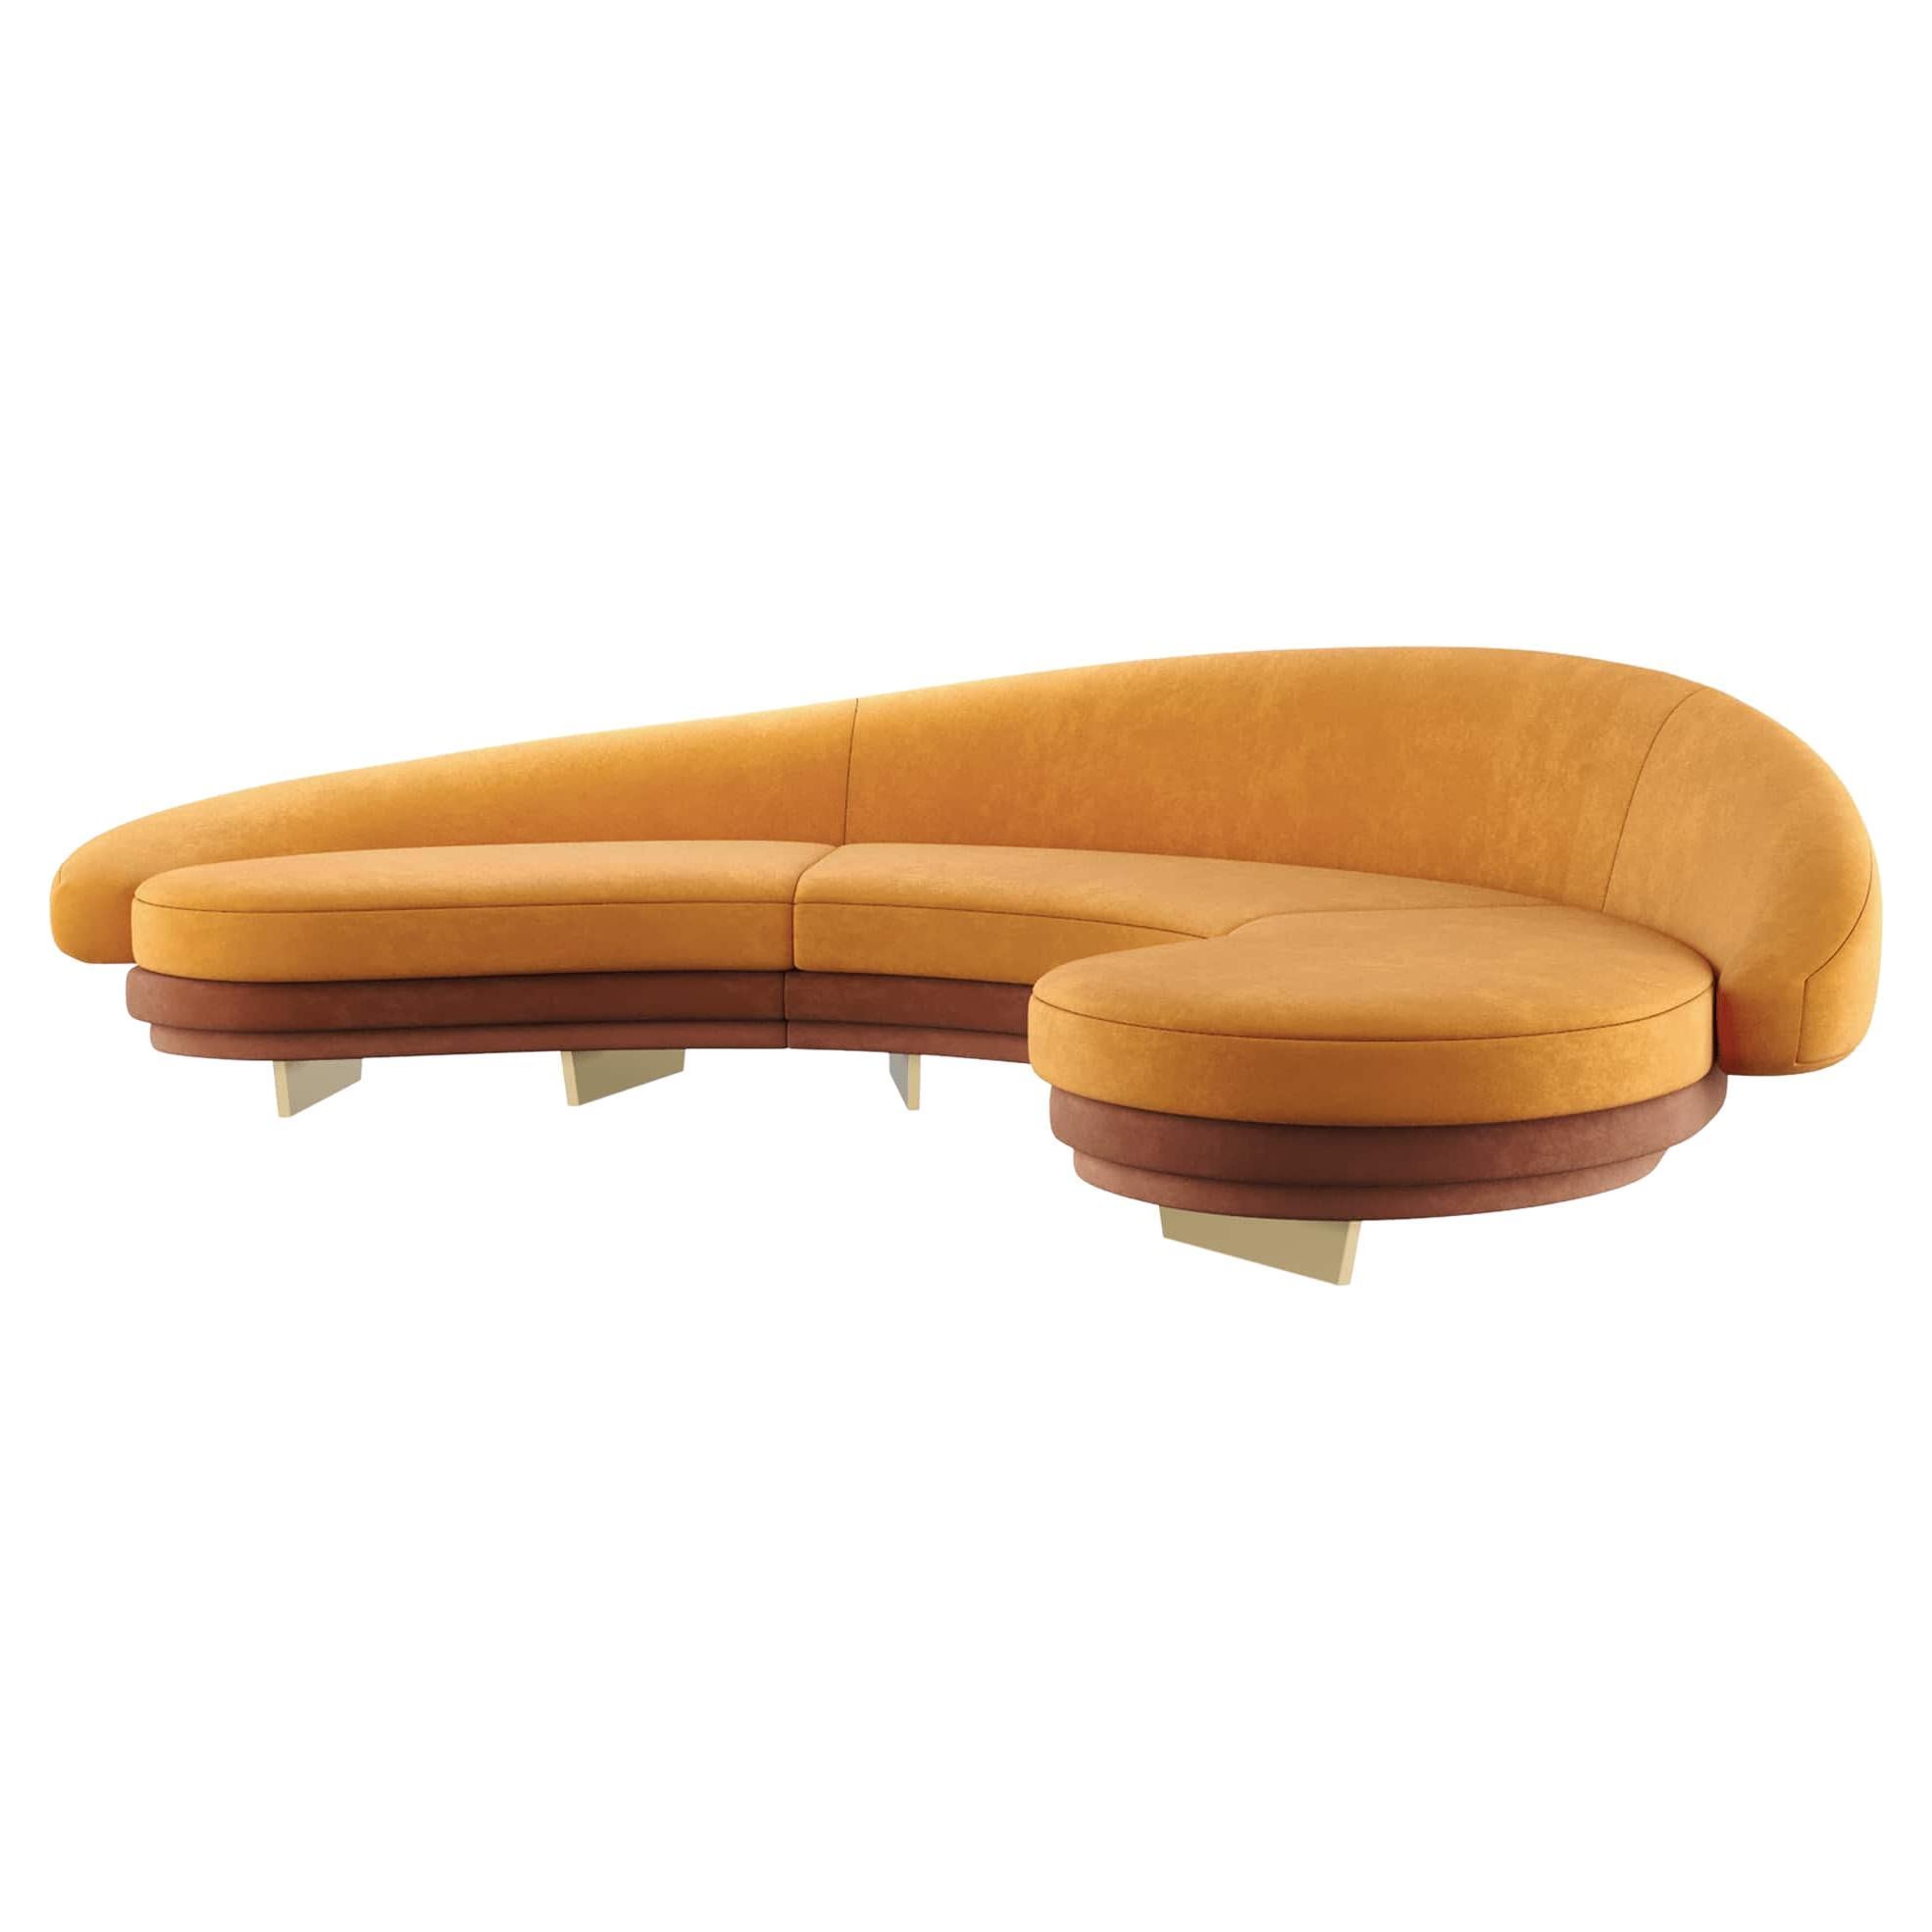 Modernes geschwungenes Serpentinen-Sofa aus orangefarbenem Samt mit Gold- und Holzdetails